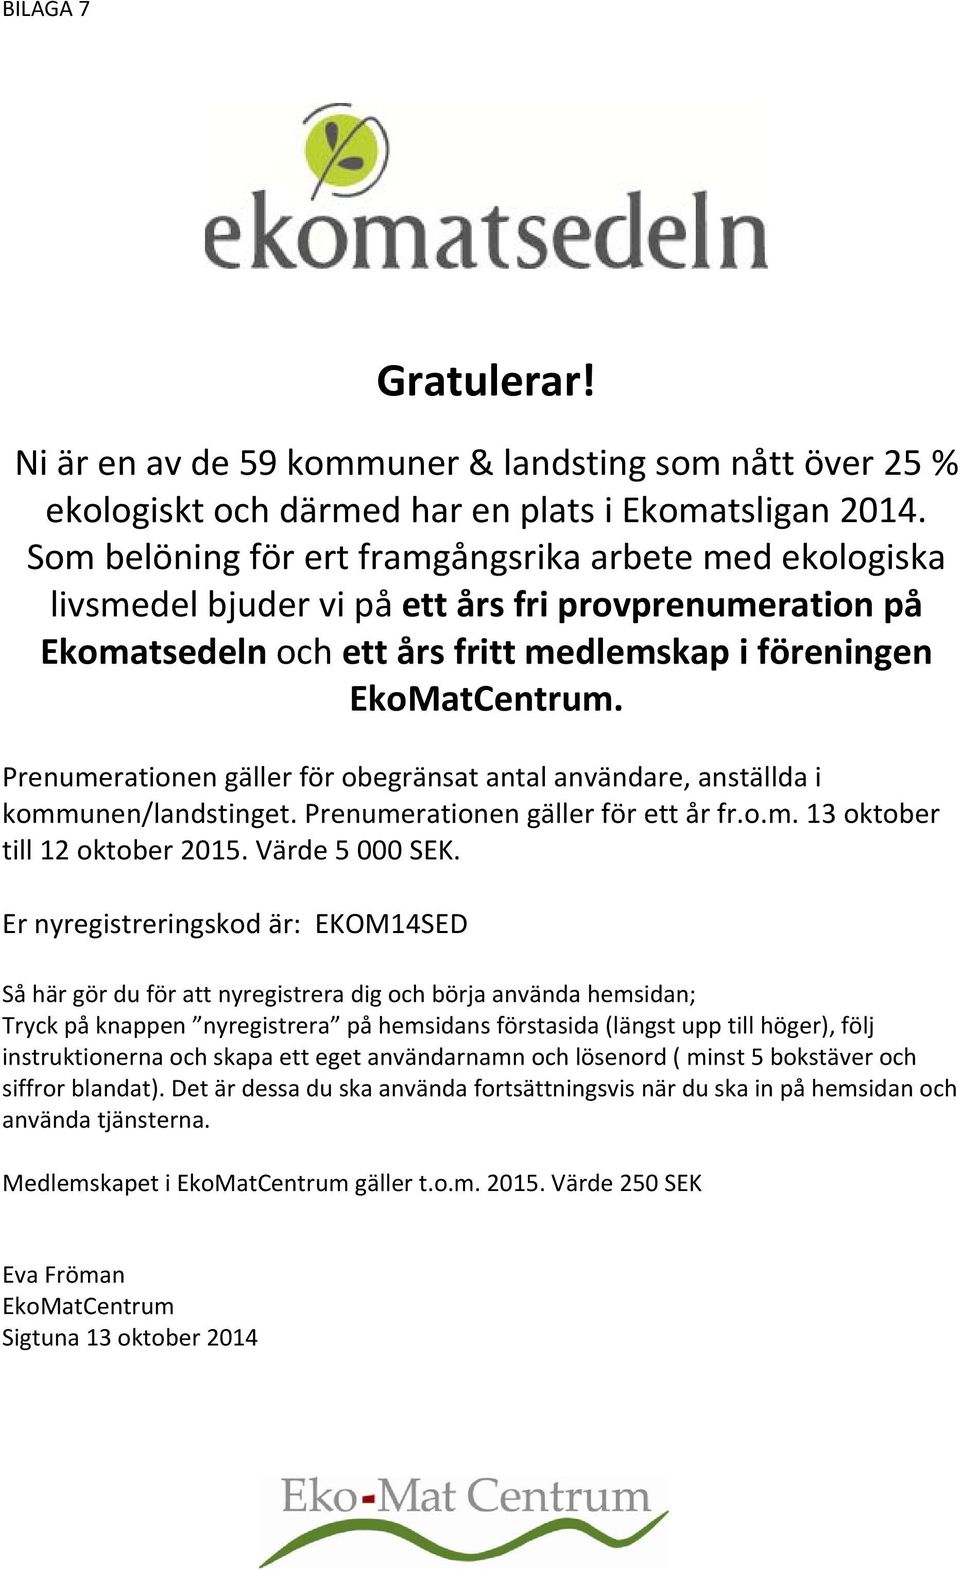 Prenumerationen gäller för obegränsat antal användare, anställda i kommunen/landstinget. Prenumerationen gäller för ett år fr.o.m. 13 oktober till 12 oktober 2015. Värde 5 000 SEK.